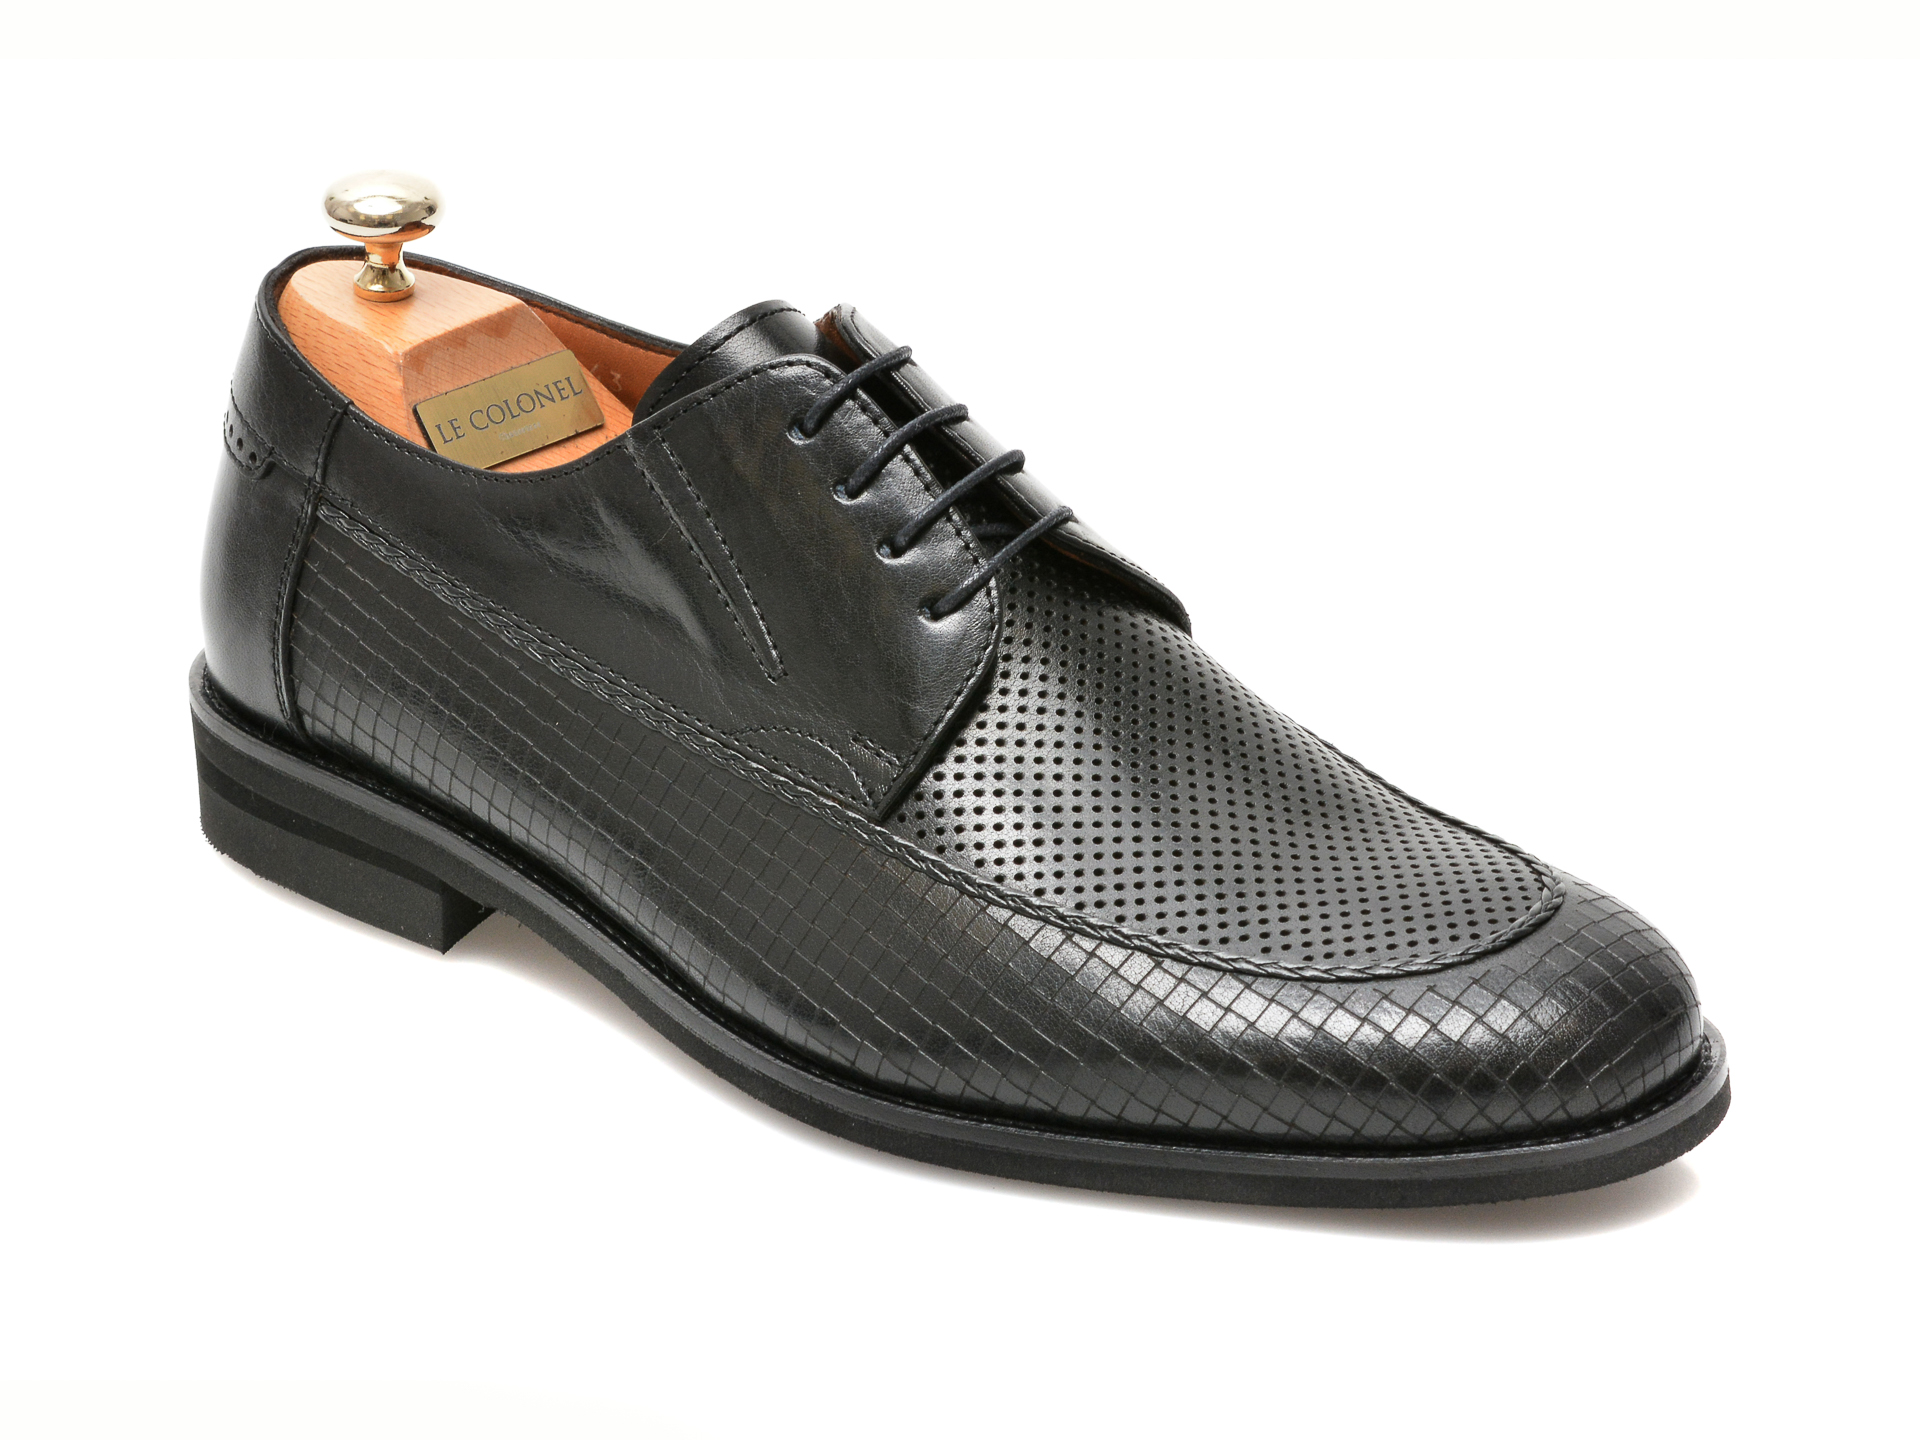 Pantofi LE COLONEL negri, 48856, din piele naturala 2022 ❤️ Pret Super tezyo.ro imagine noua 2022